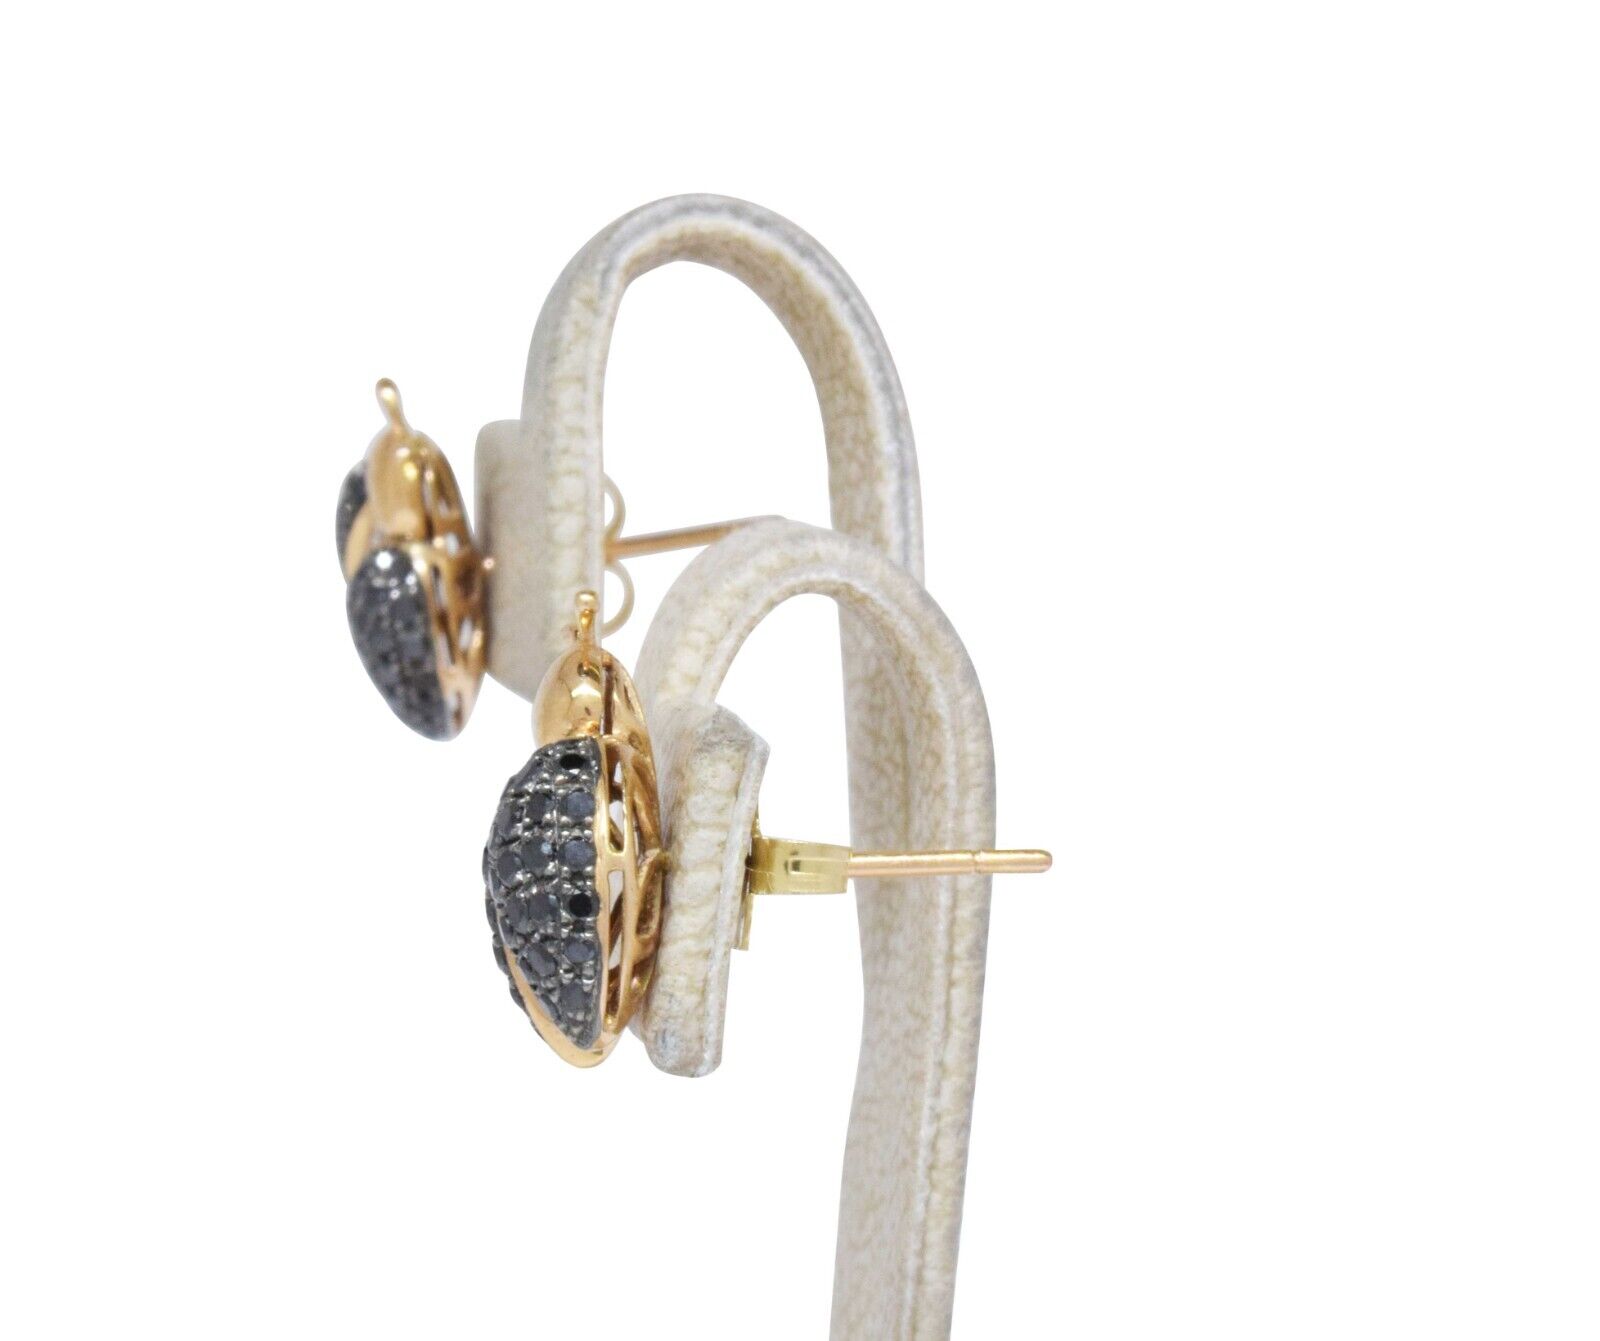 Ladybug Earrings Diamond & 18k Yellow Gold